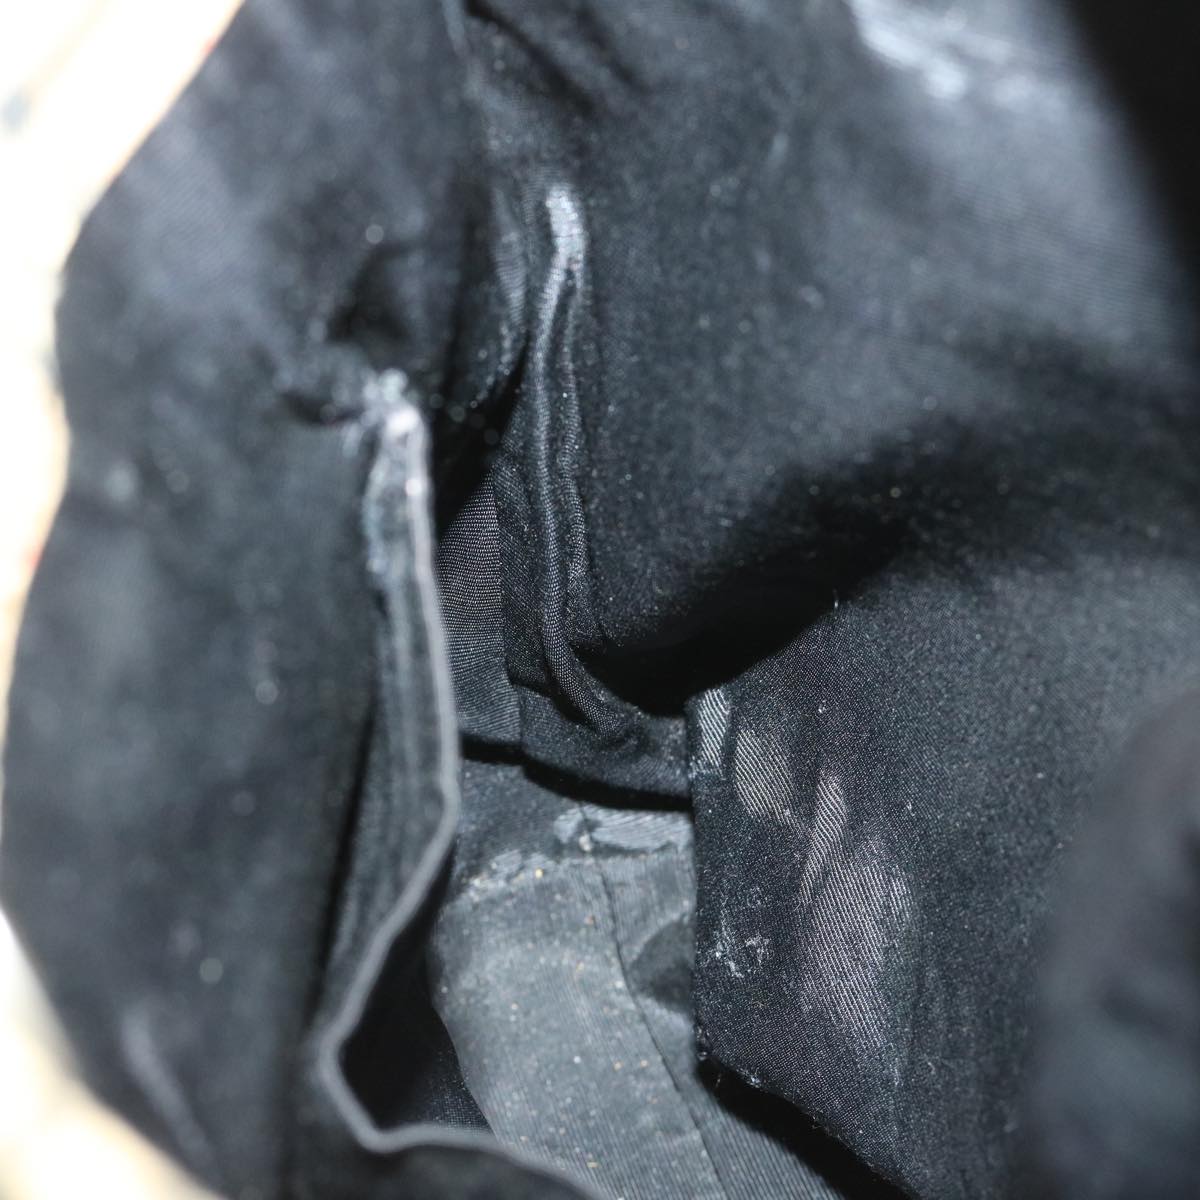 Burberrys Nova Check Shoulder Bag Canvas Beige Black Auth yk11247